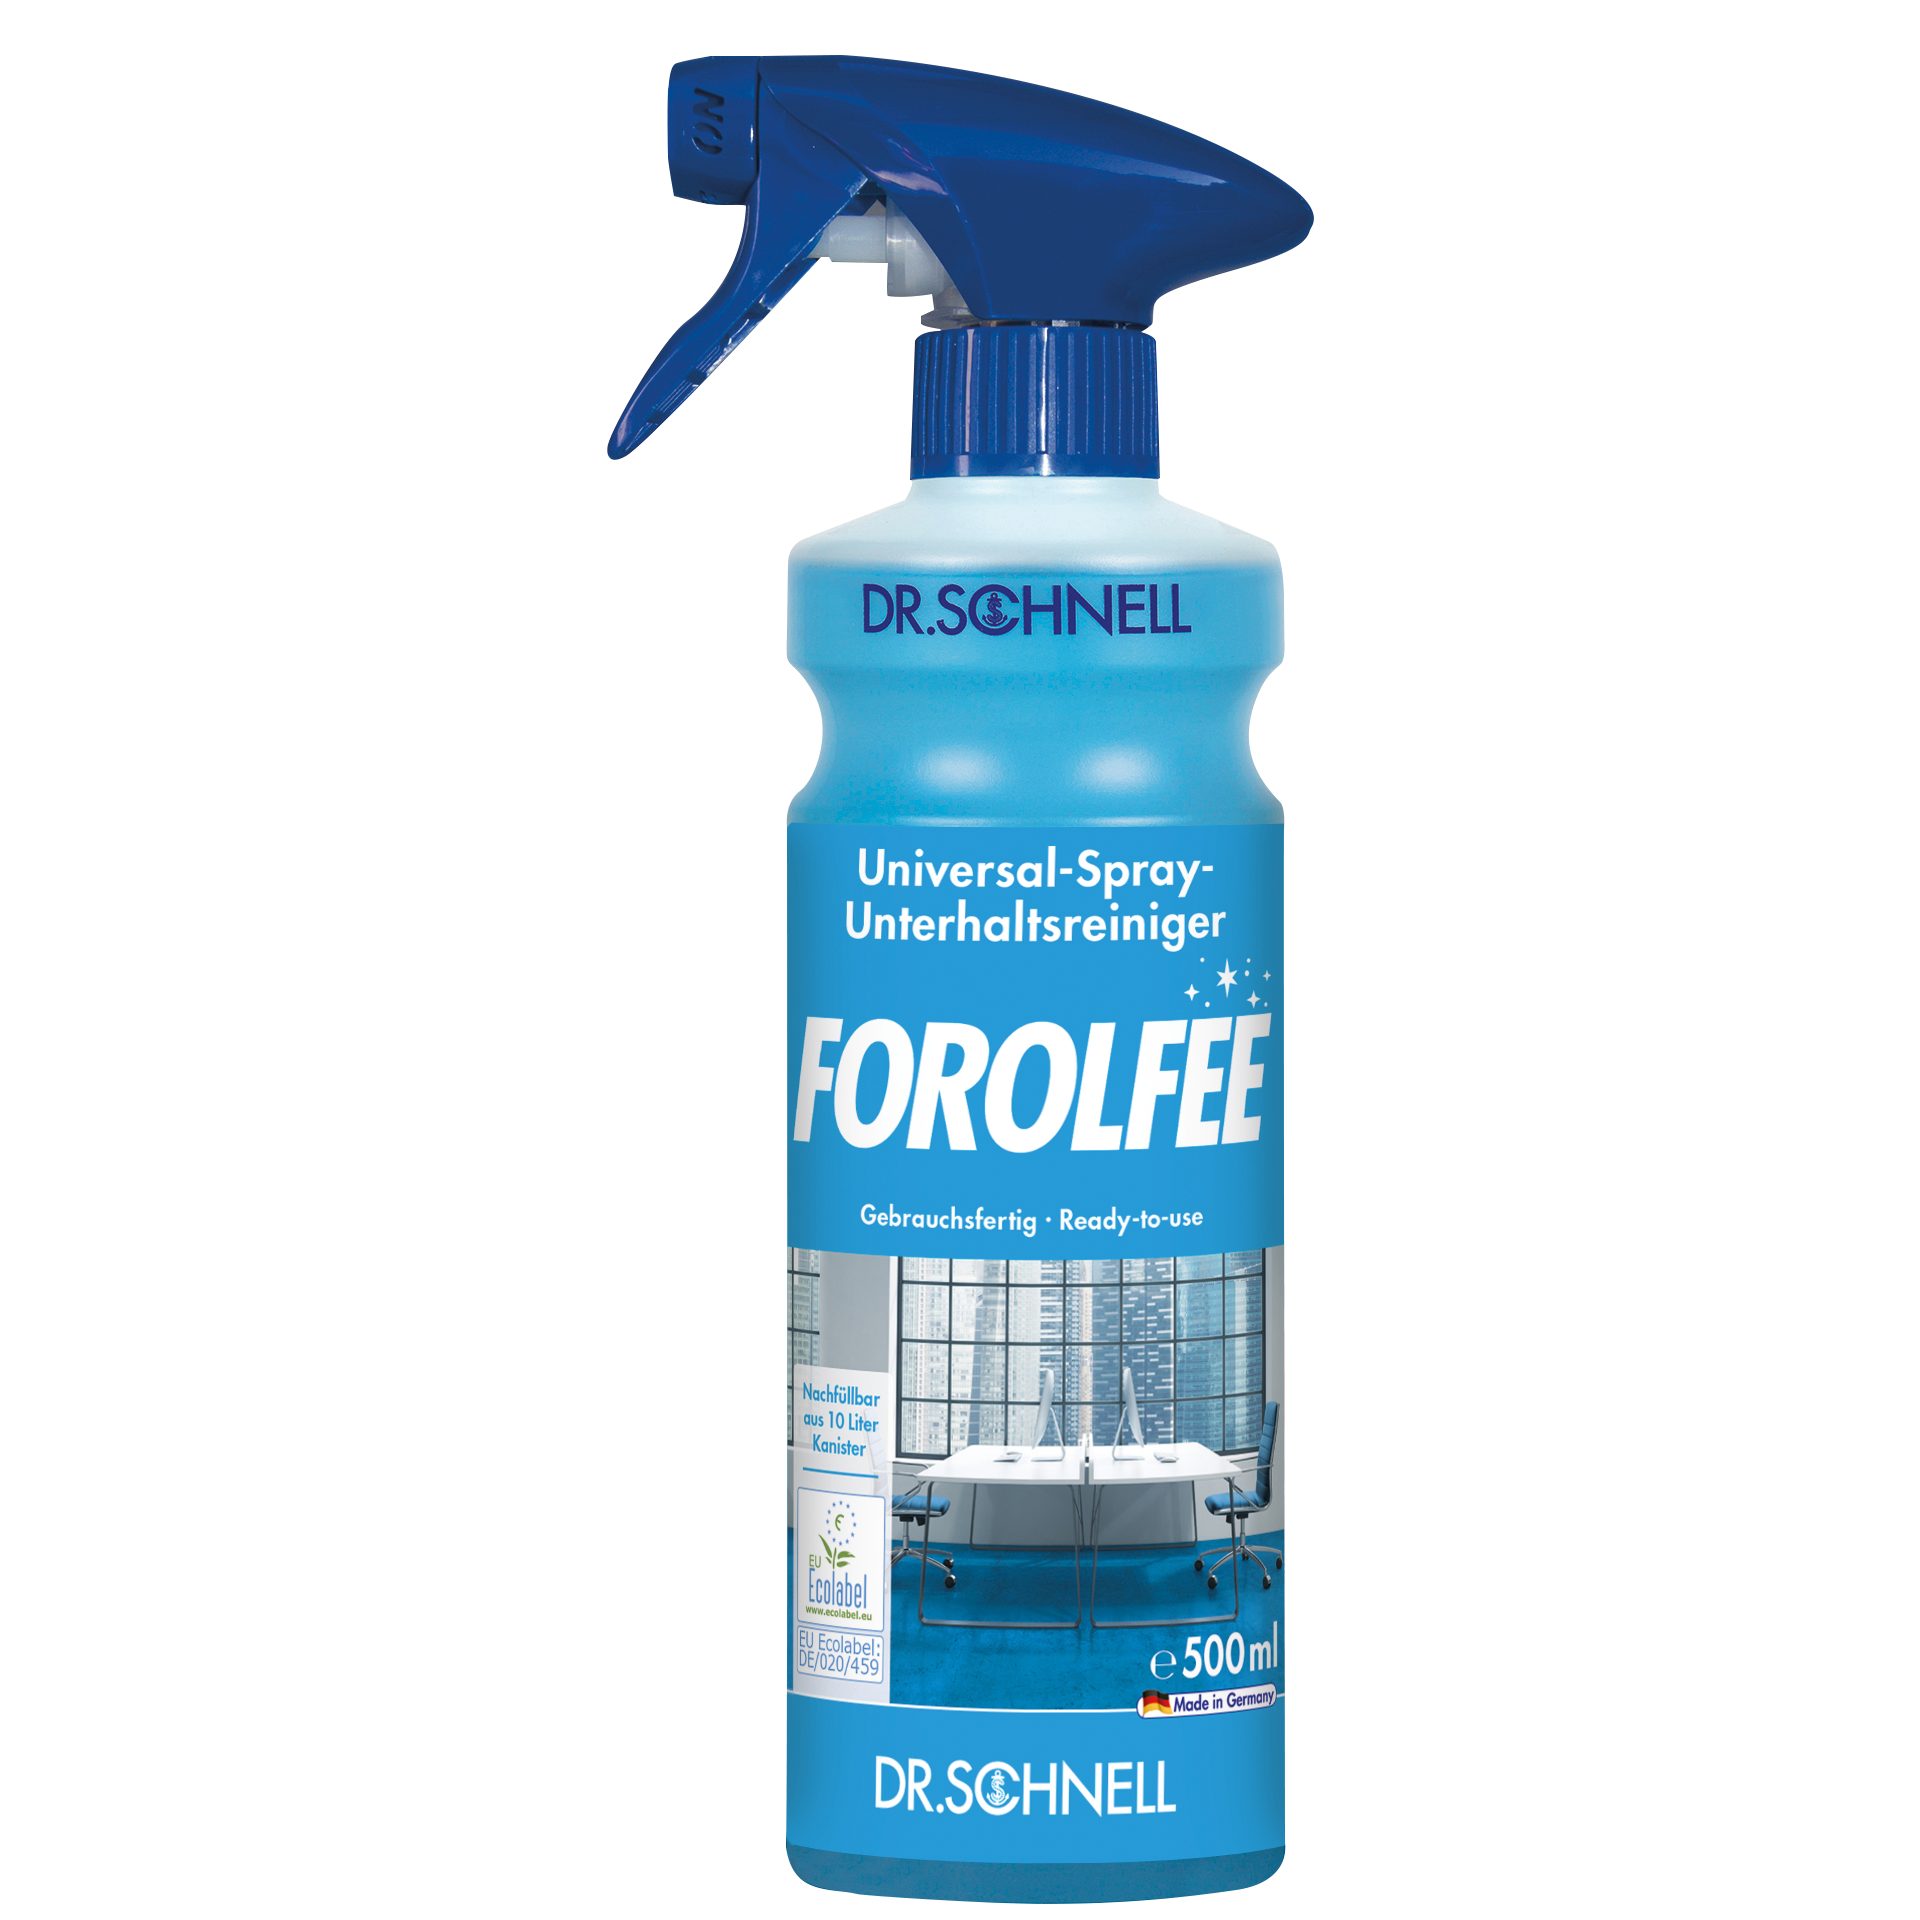 Universal-Spray-Unterhaltsreiniger Forolfee 500 ml Schnell Allzweckreiniger Dr.